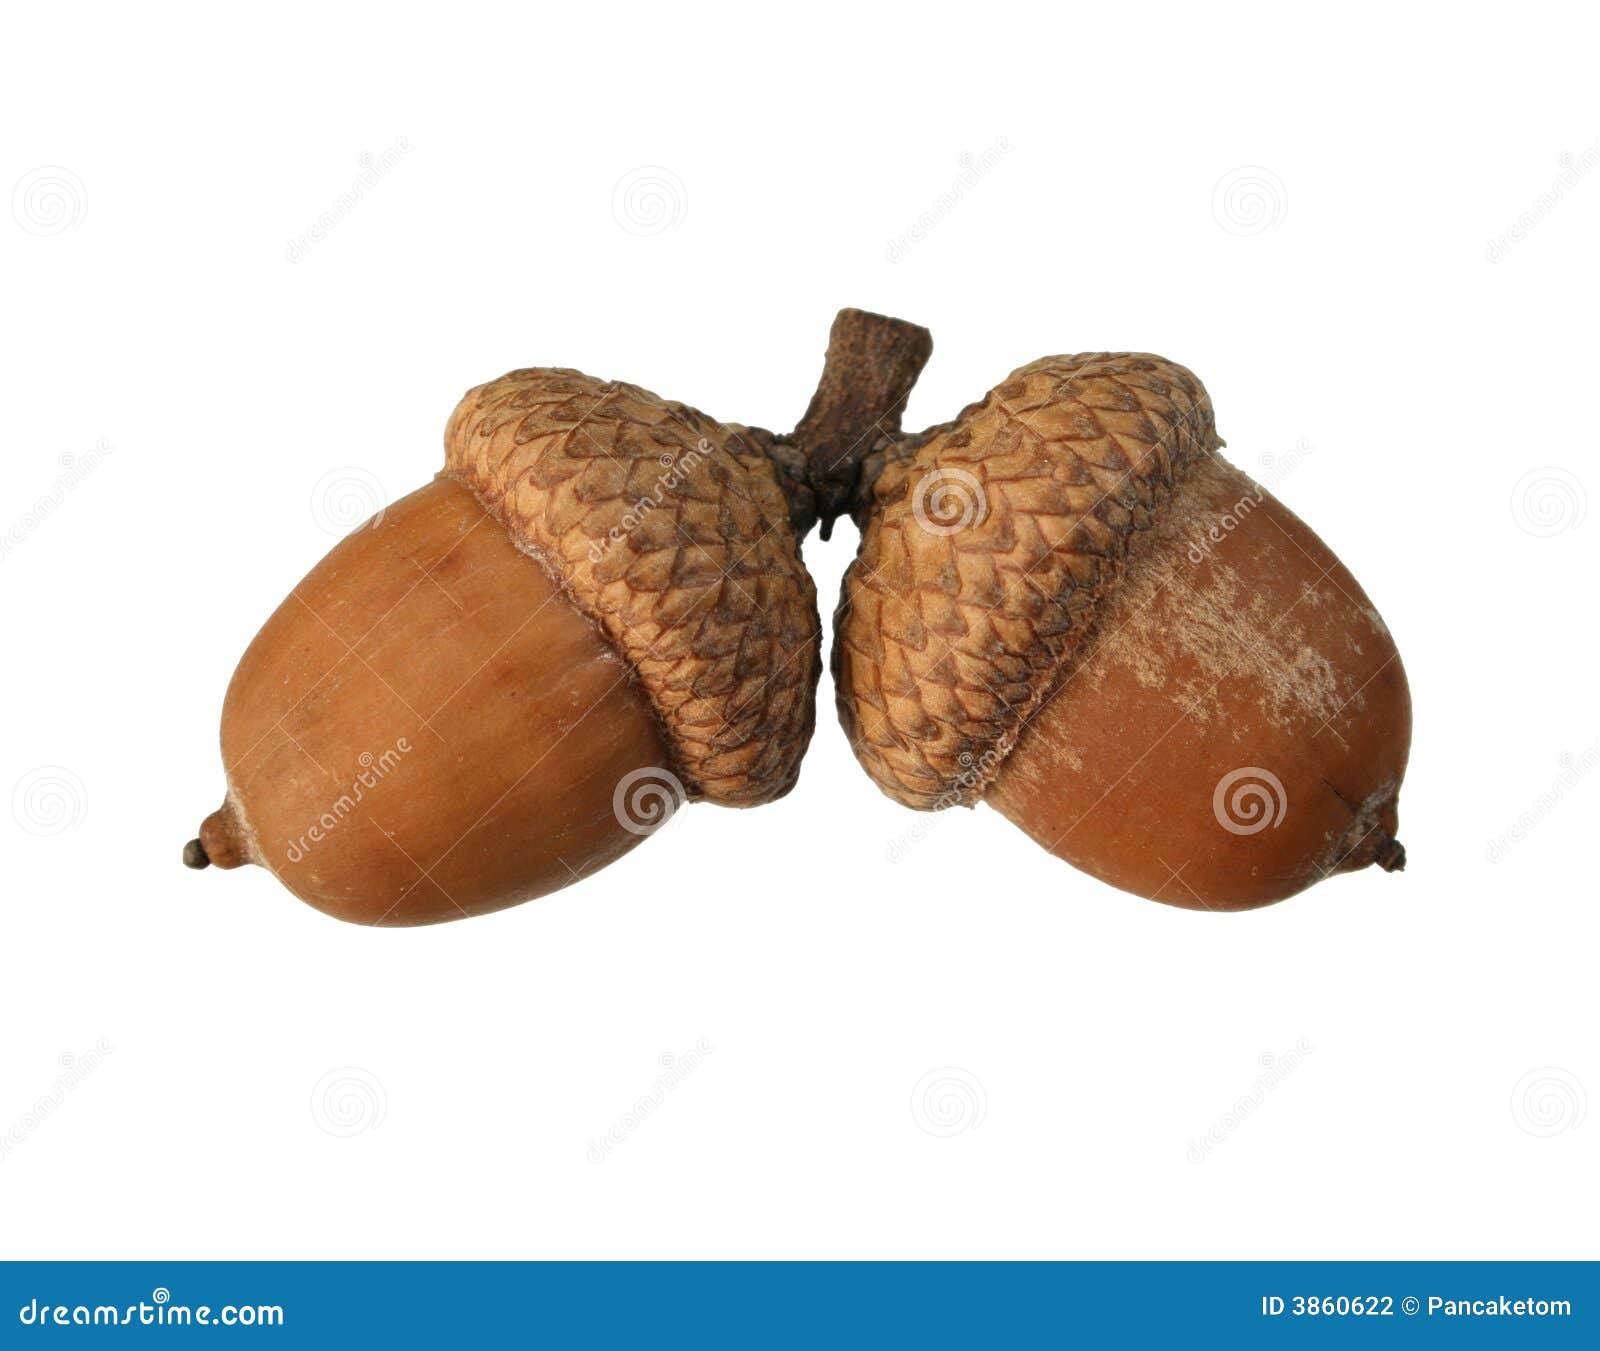  acorn pair